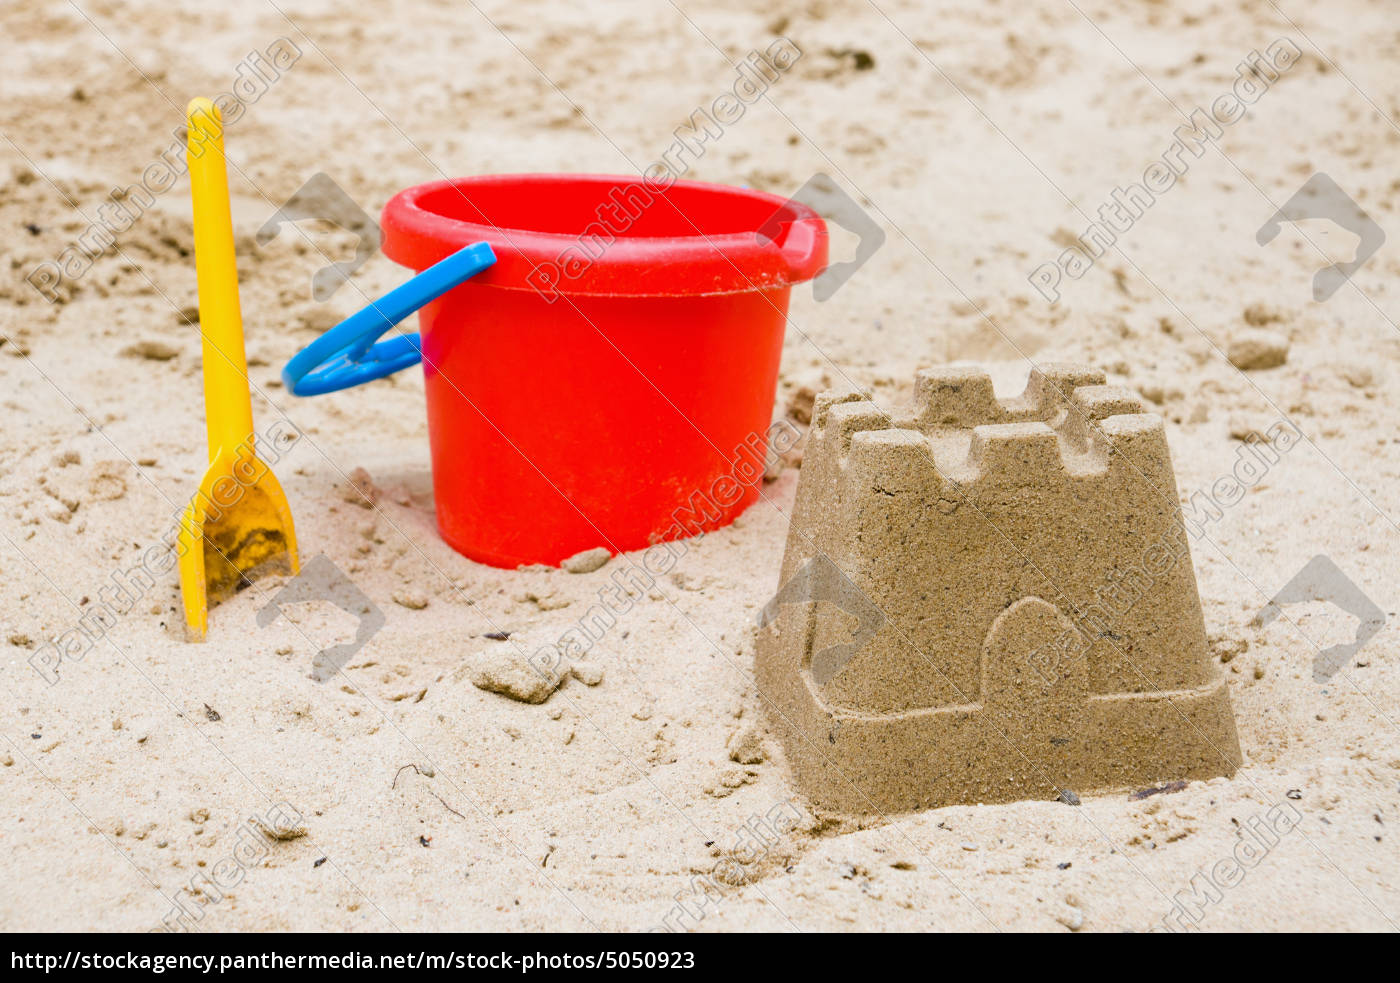 sandcastle med spand og skovl - Stockphoto #5050923 | PantherMedia